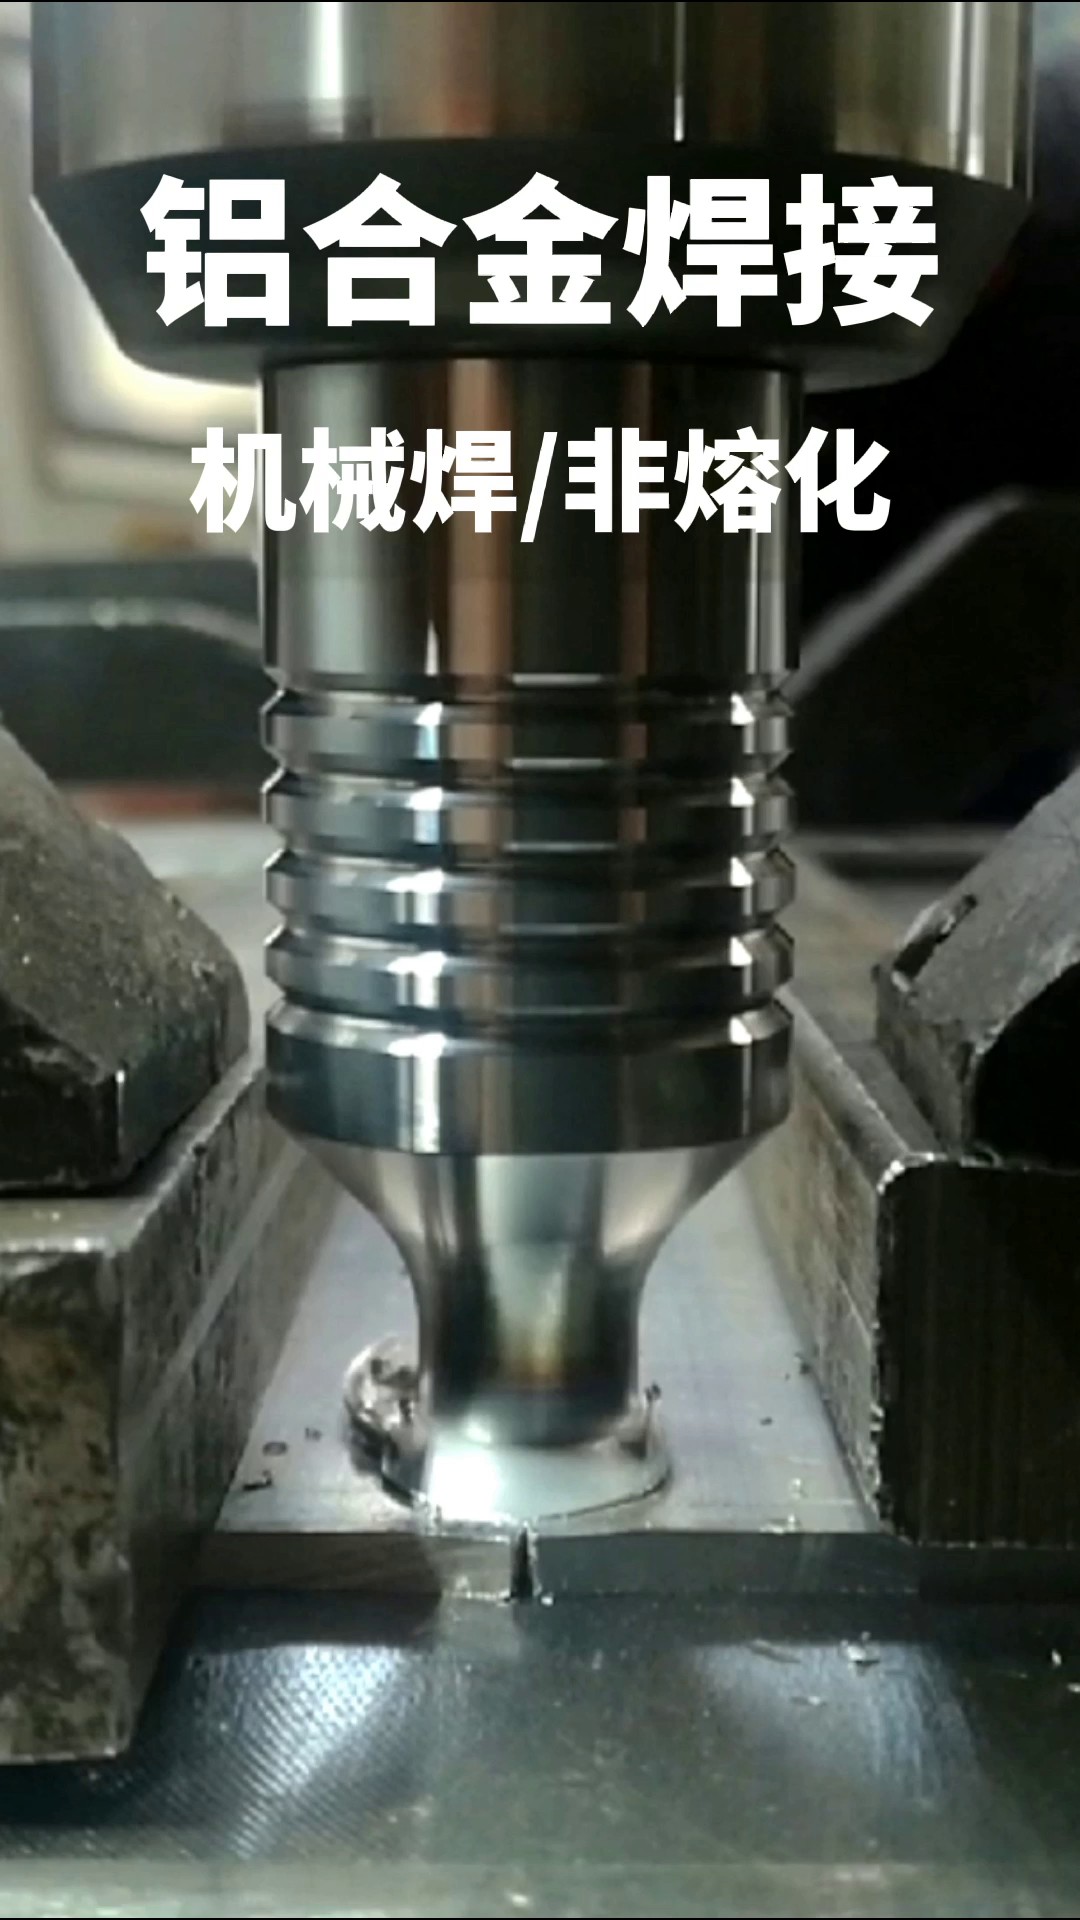 深圳铝合金搅拌摩擦焊报价行情,搅拌摩擦焊